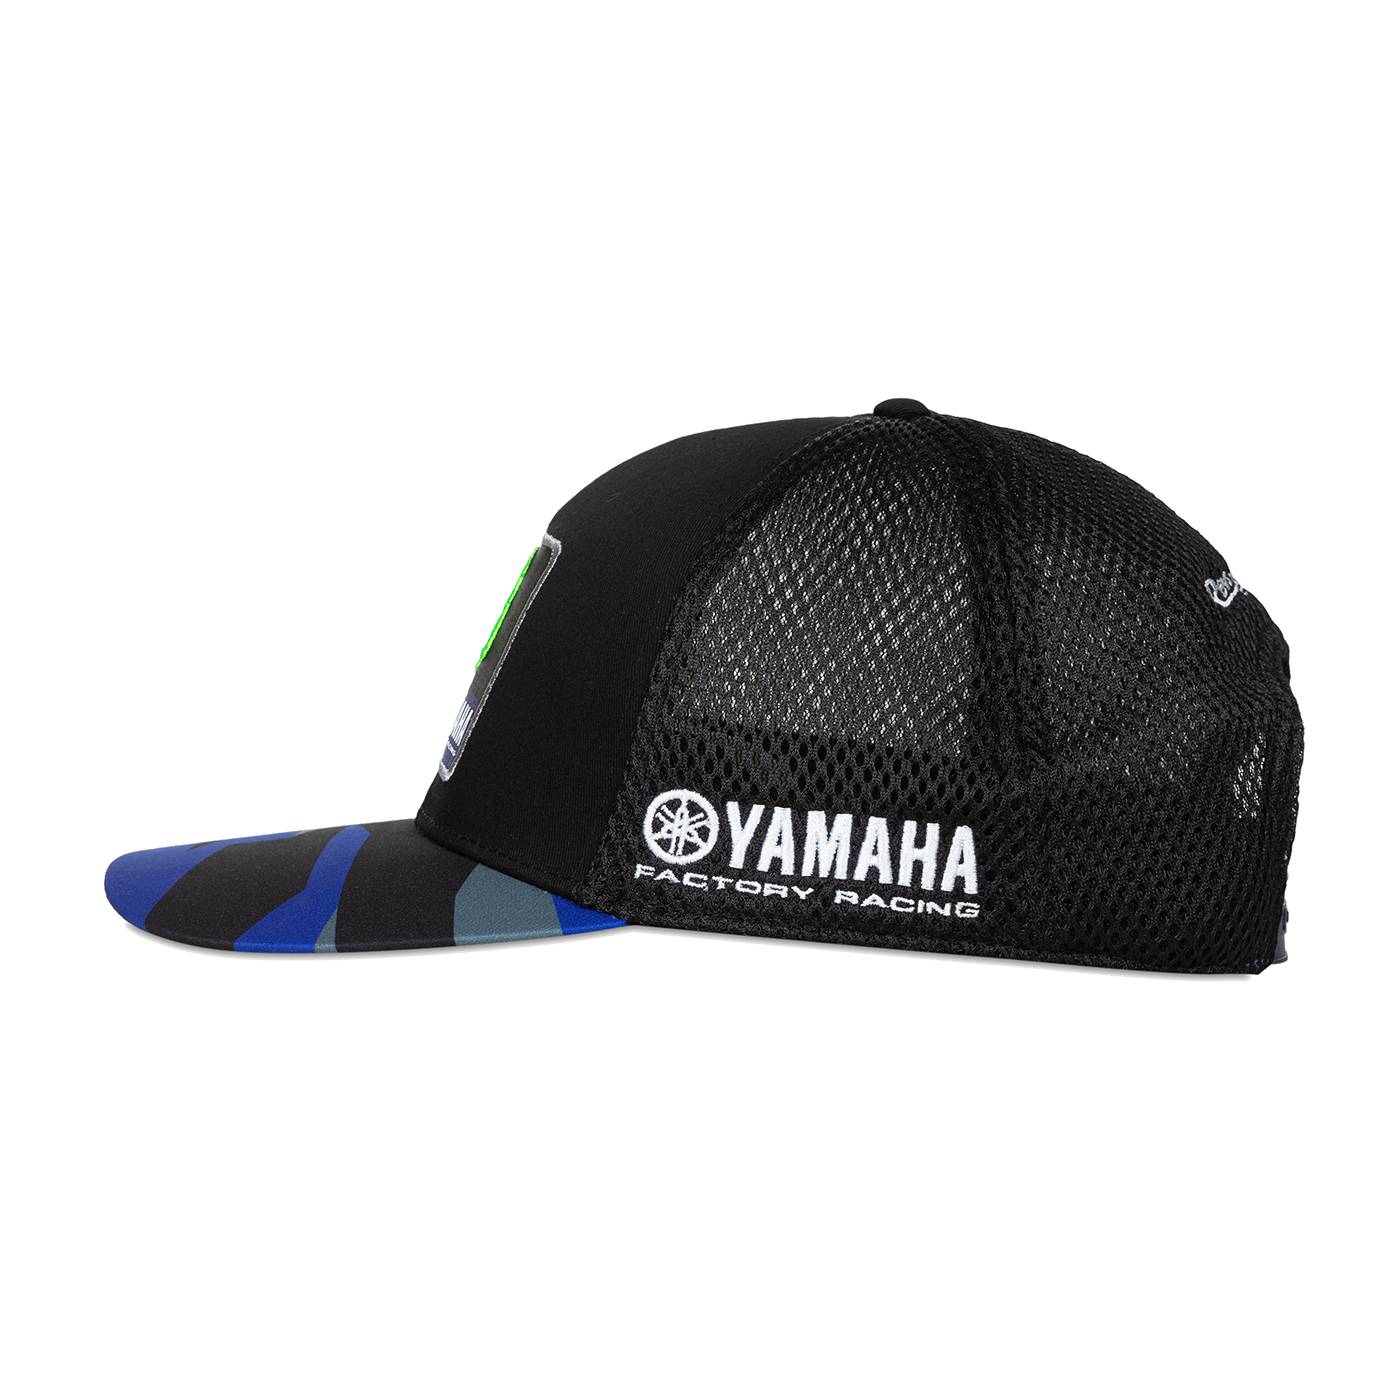 Yamaha Factory Racing Team Cap - schwarz